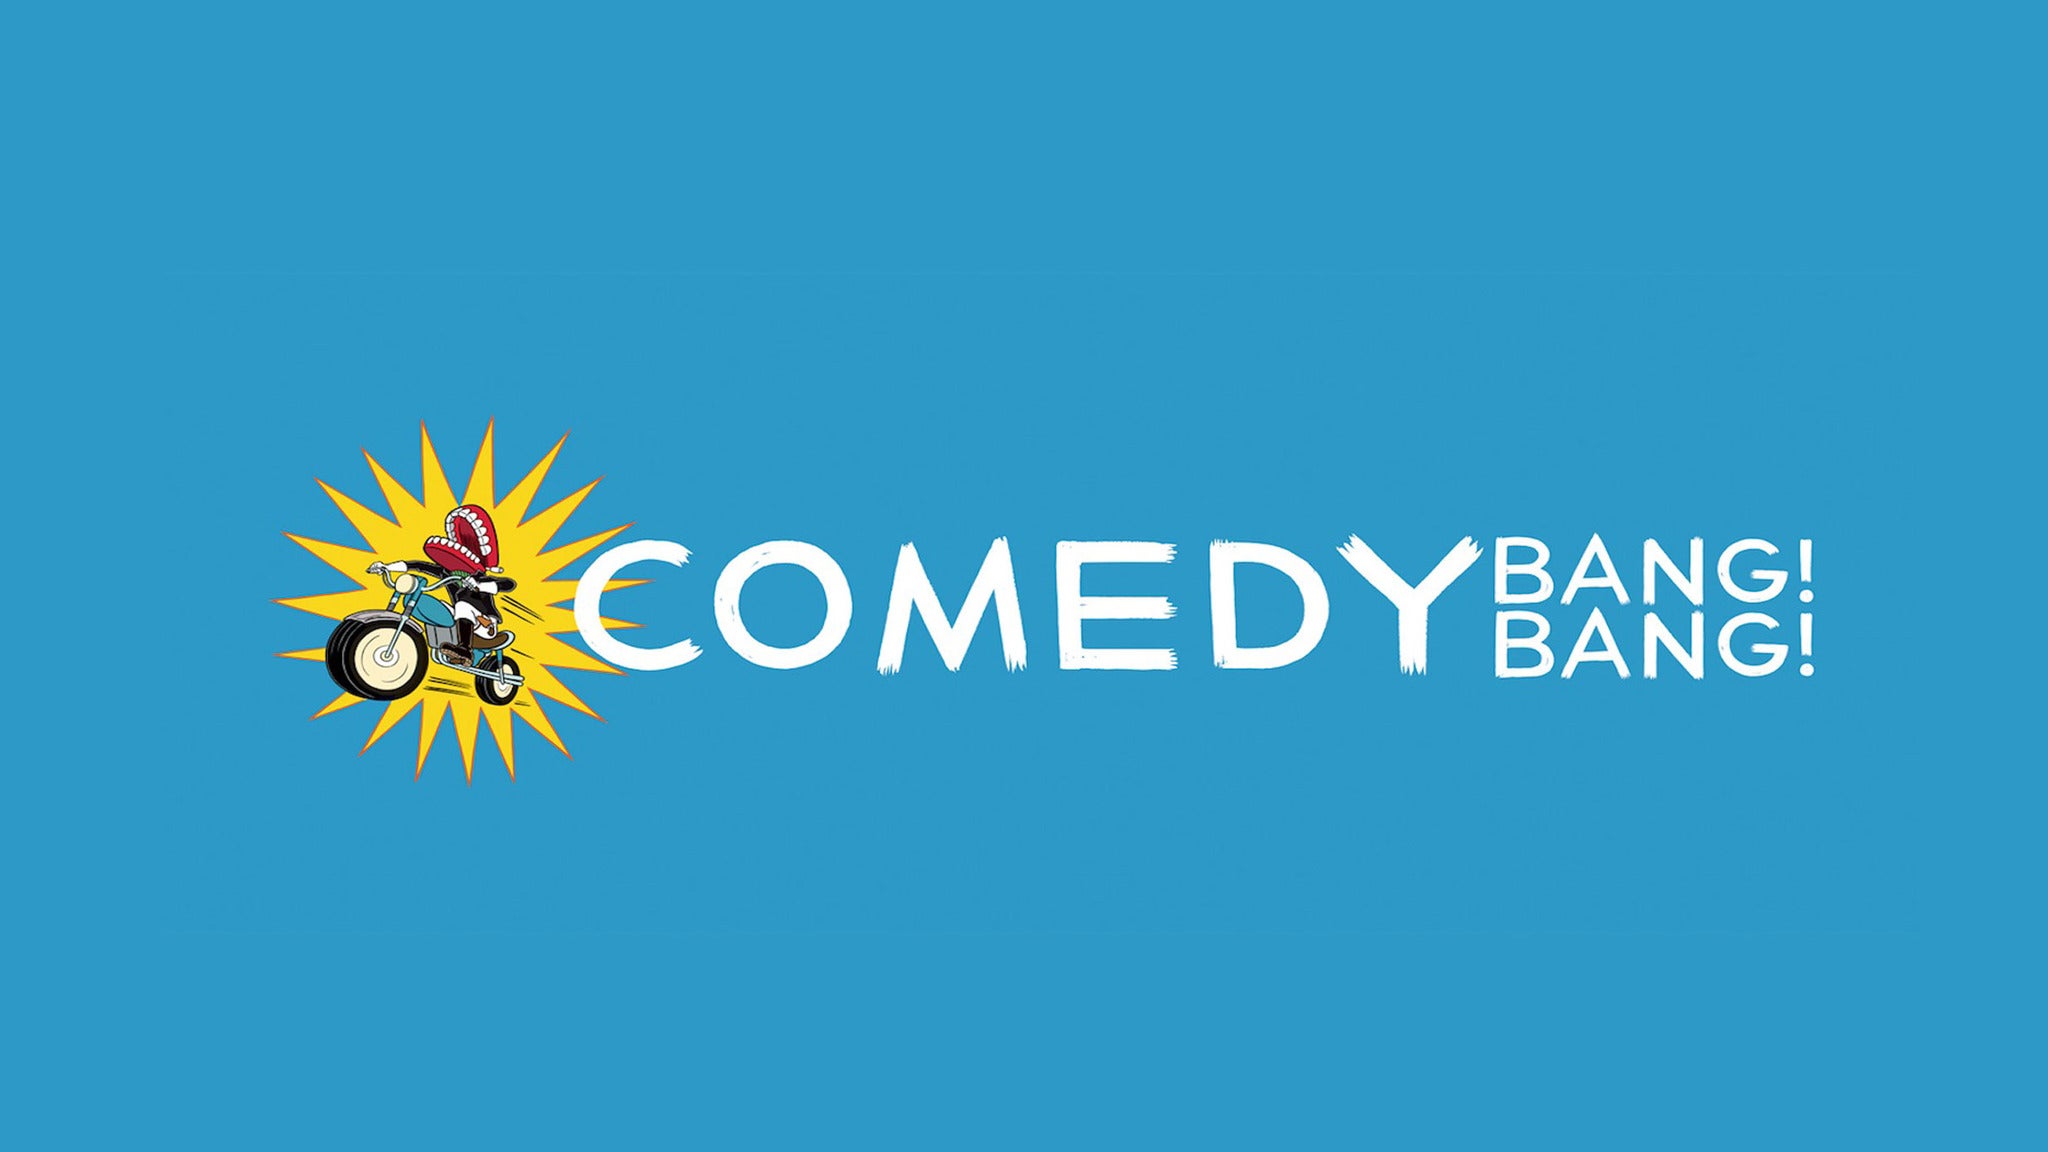 Comedy Bang! Bang! Live! presale information on freepresalepasswords.com